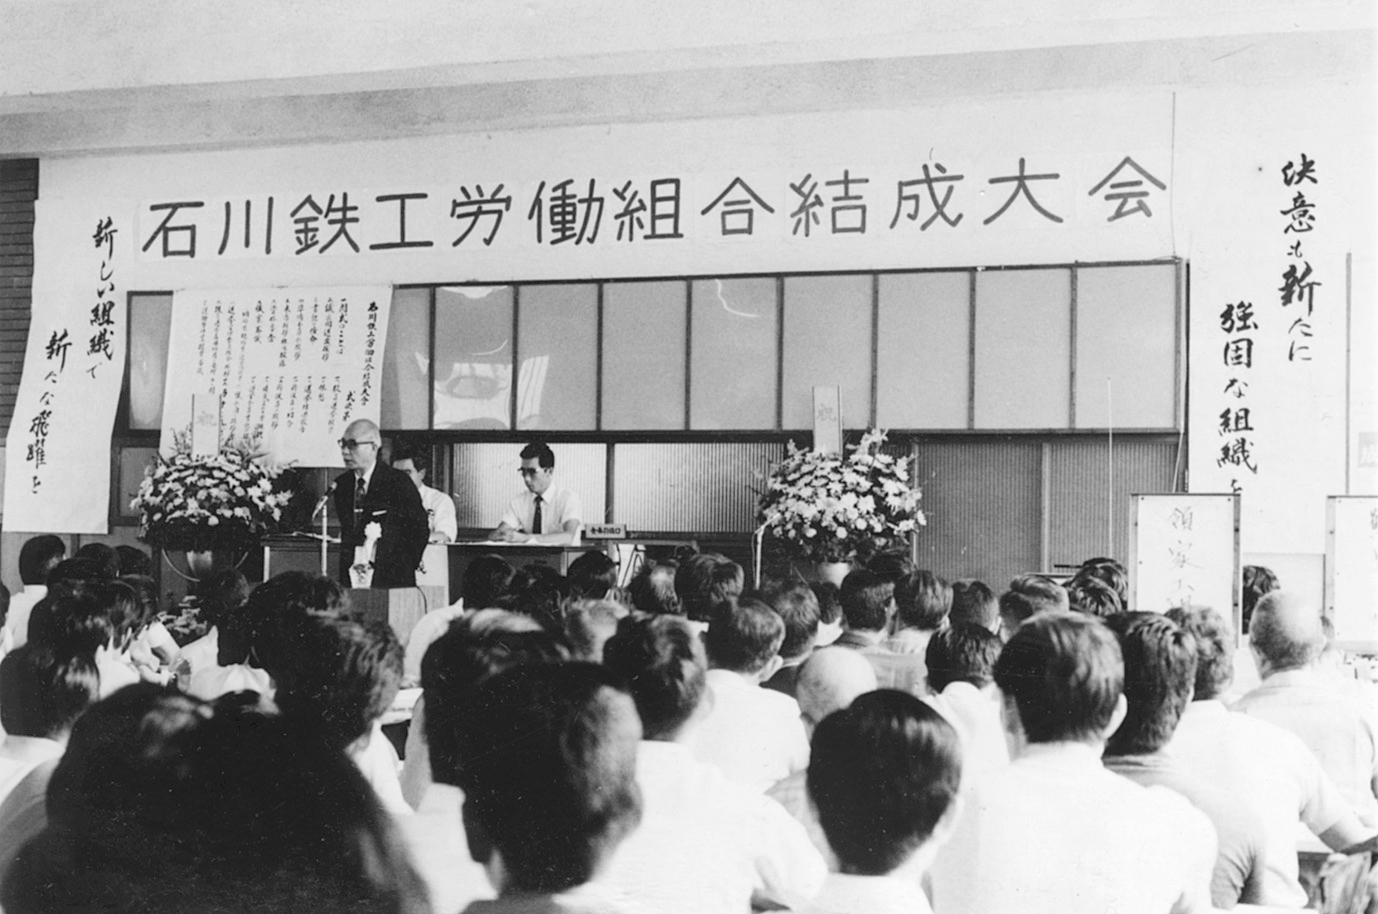 ソミック石川労働組合が50周年を迎えました